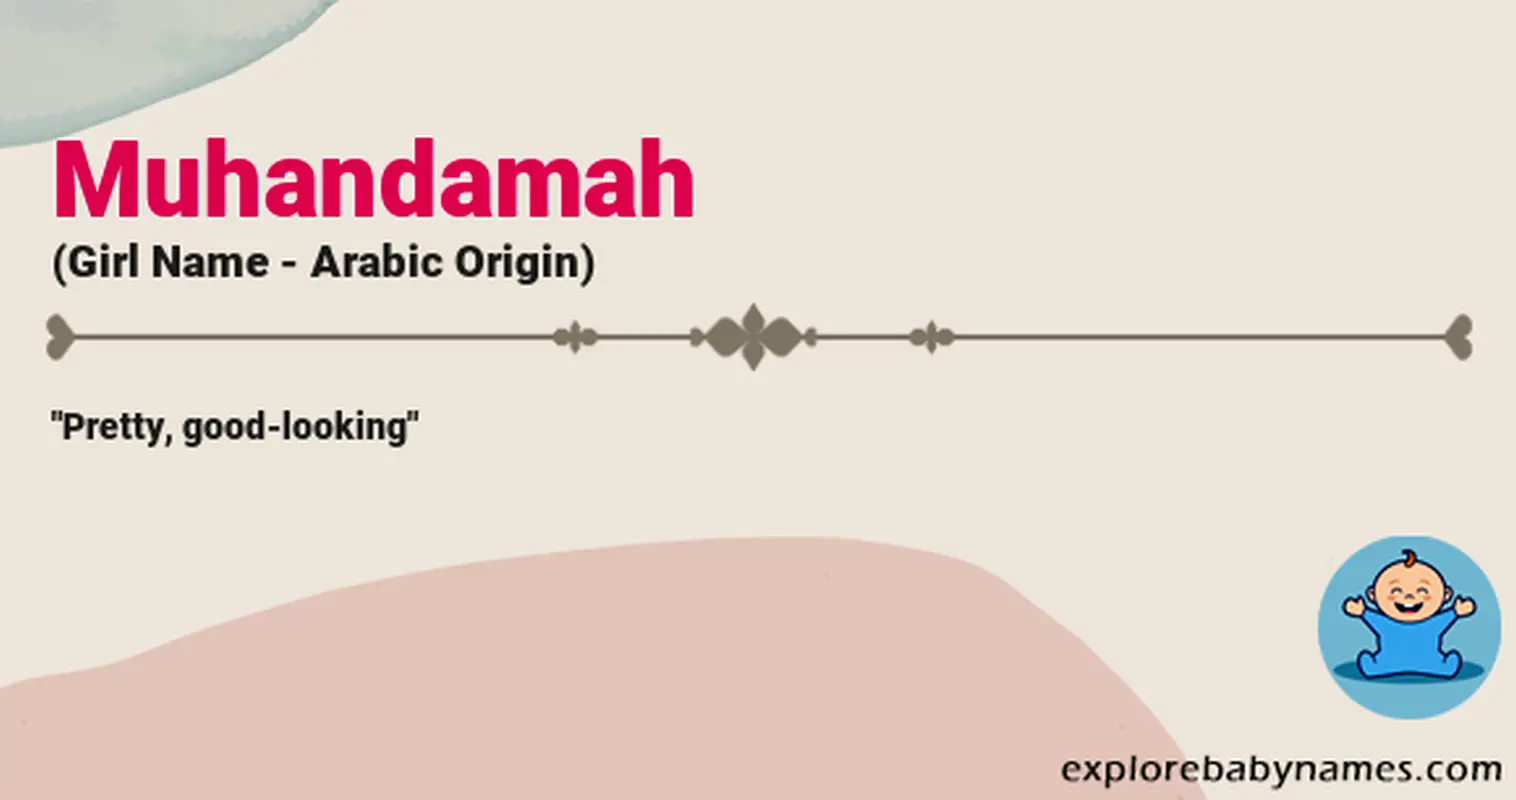 Meaning of Muhandamah